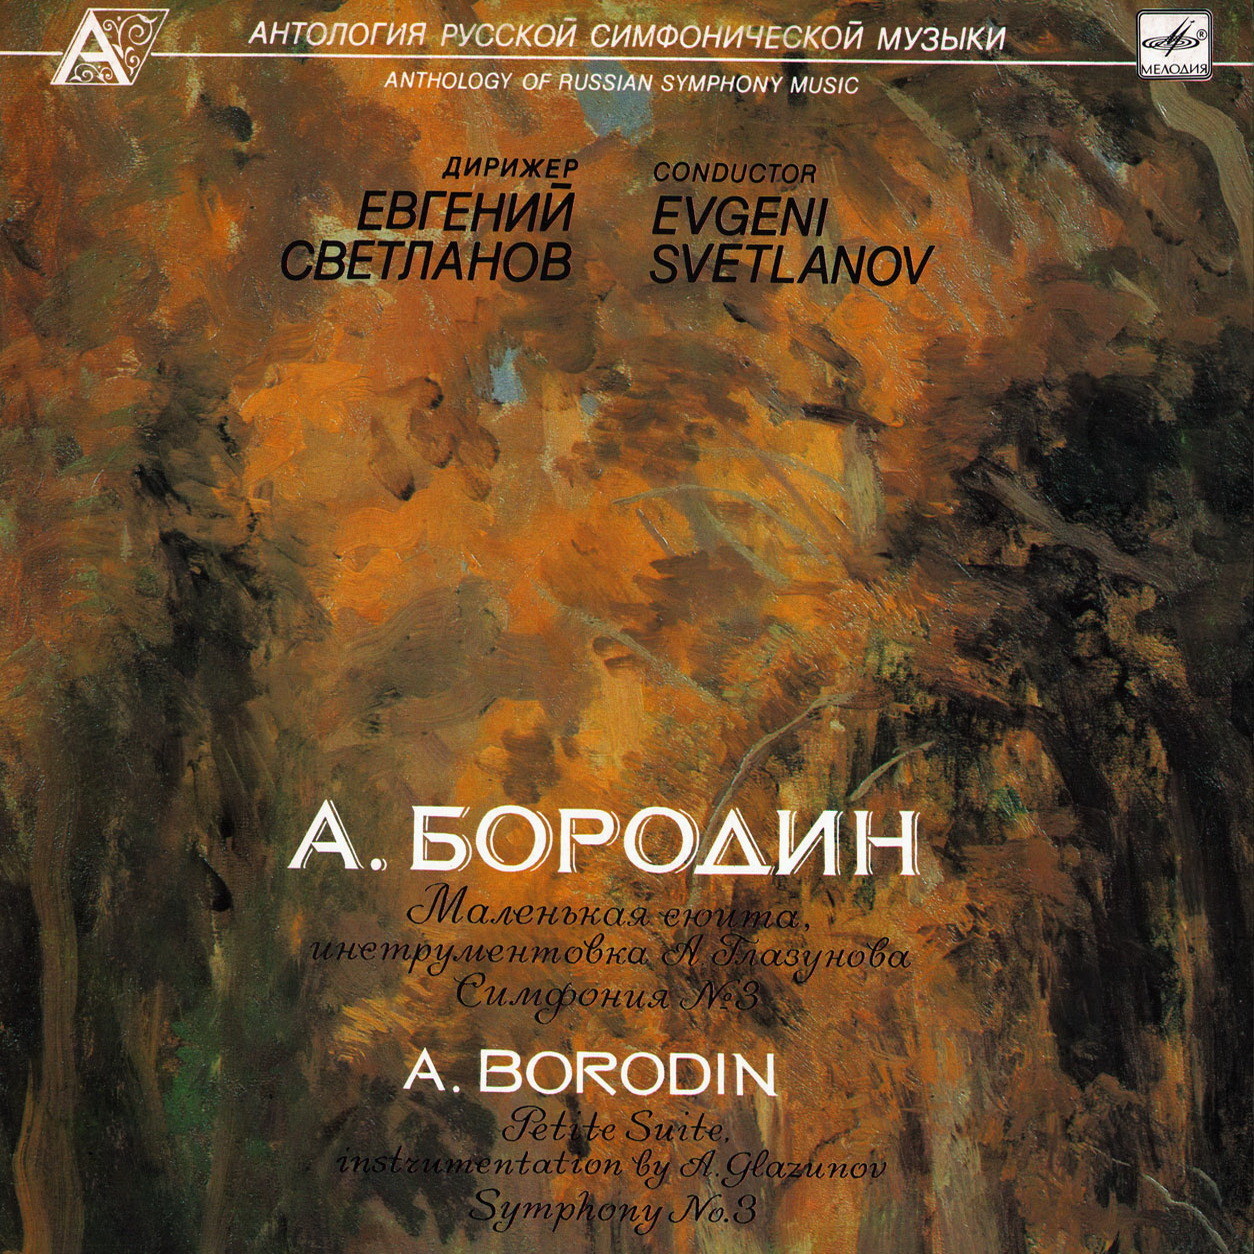 А. БОРОДИН (1833-1887): Маленькая сюита, Симфония №3 (Е. Светланов)